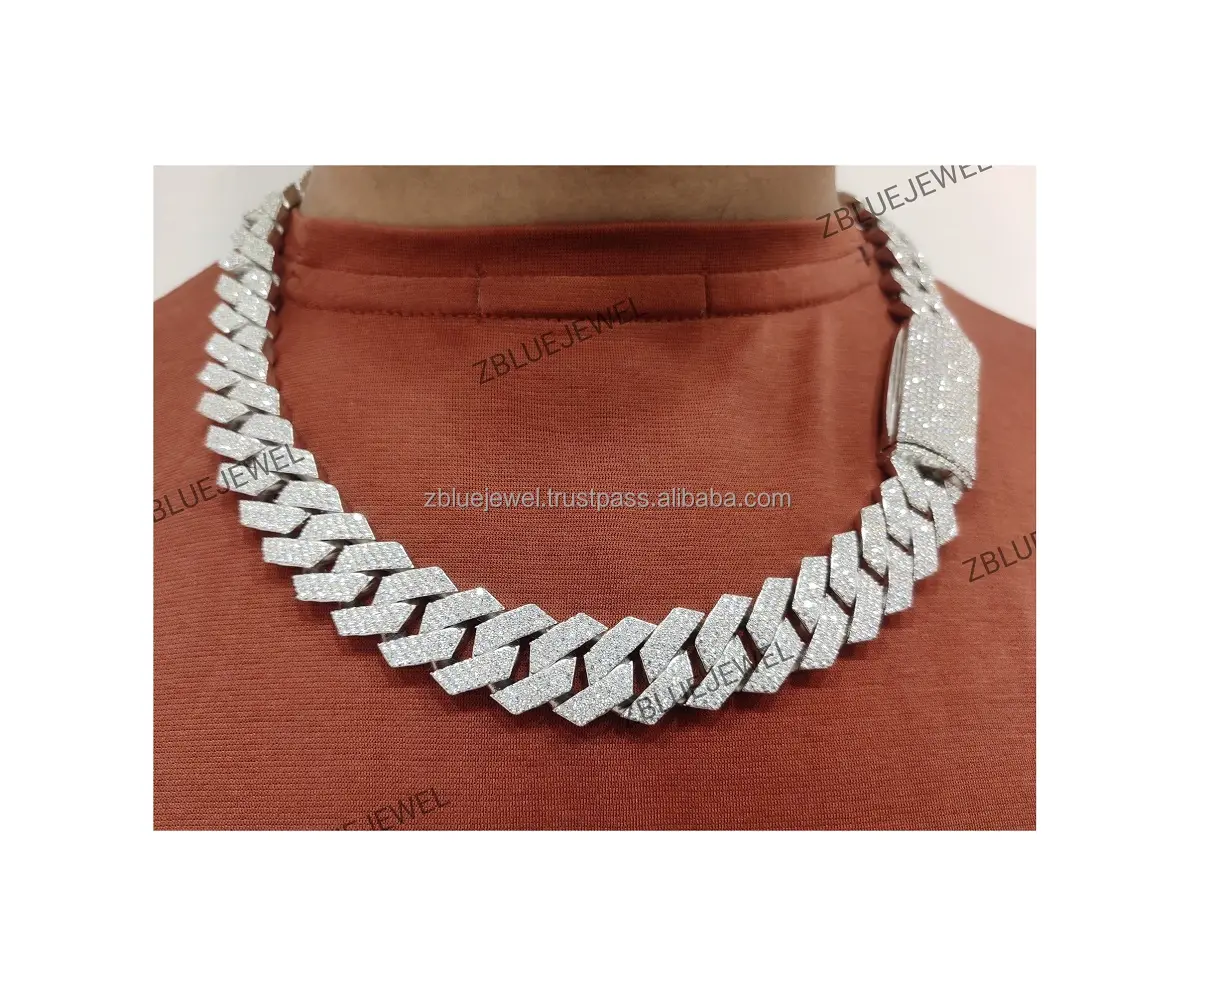 20mm Premiumqualität niedrige Preise neuestes Design Eiskette VVS Moissanit Diamant kubanische Gliederkette für Herren Damen Geburtstagsgeschenke